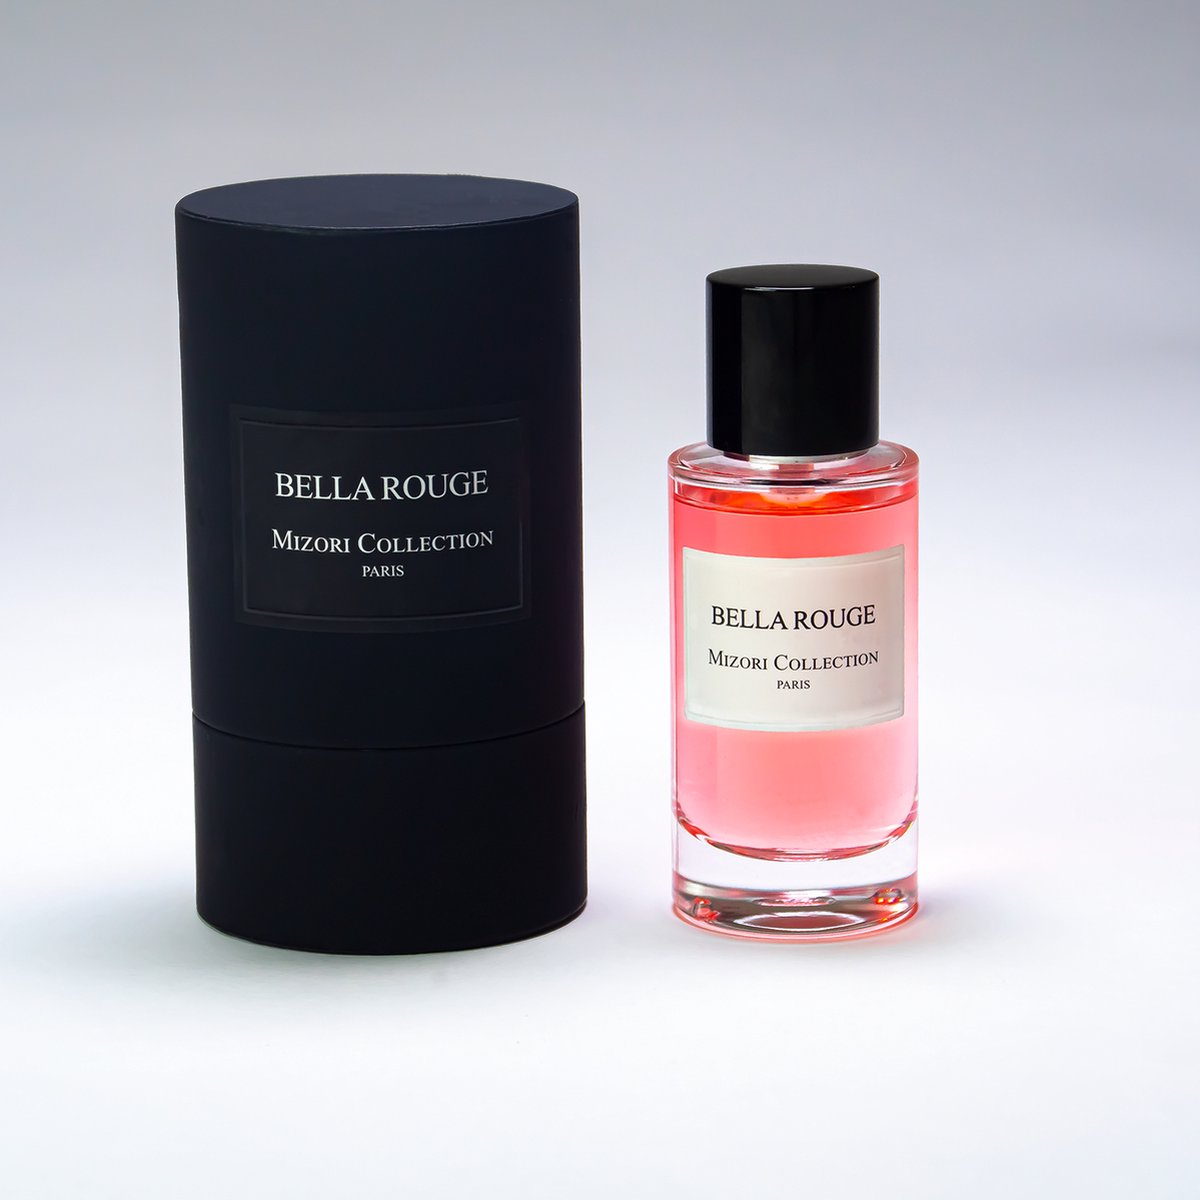 Bella Rouge - Mizori Collection Paris - High Exclusive Perfume - Eau de Parfum - 50 ml - Niche Perfume